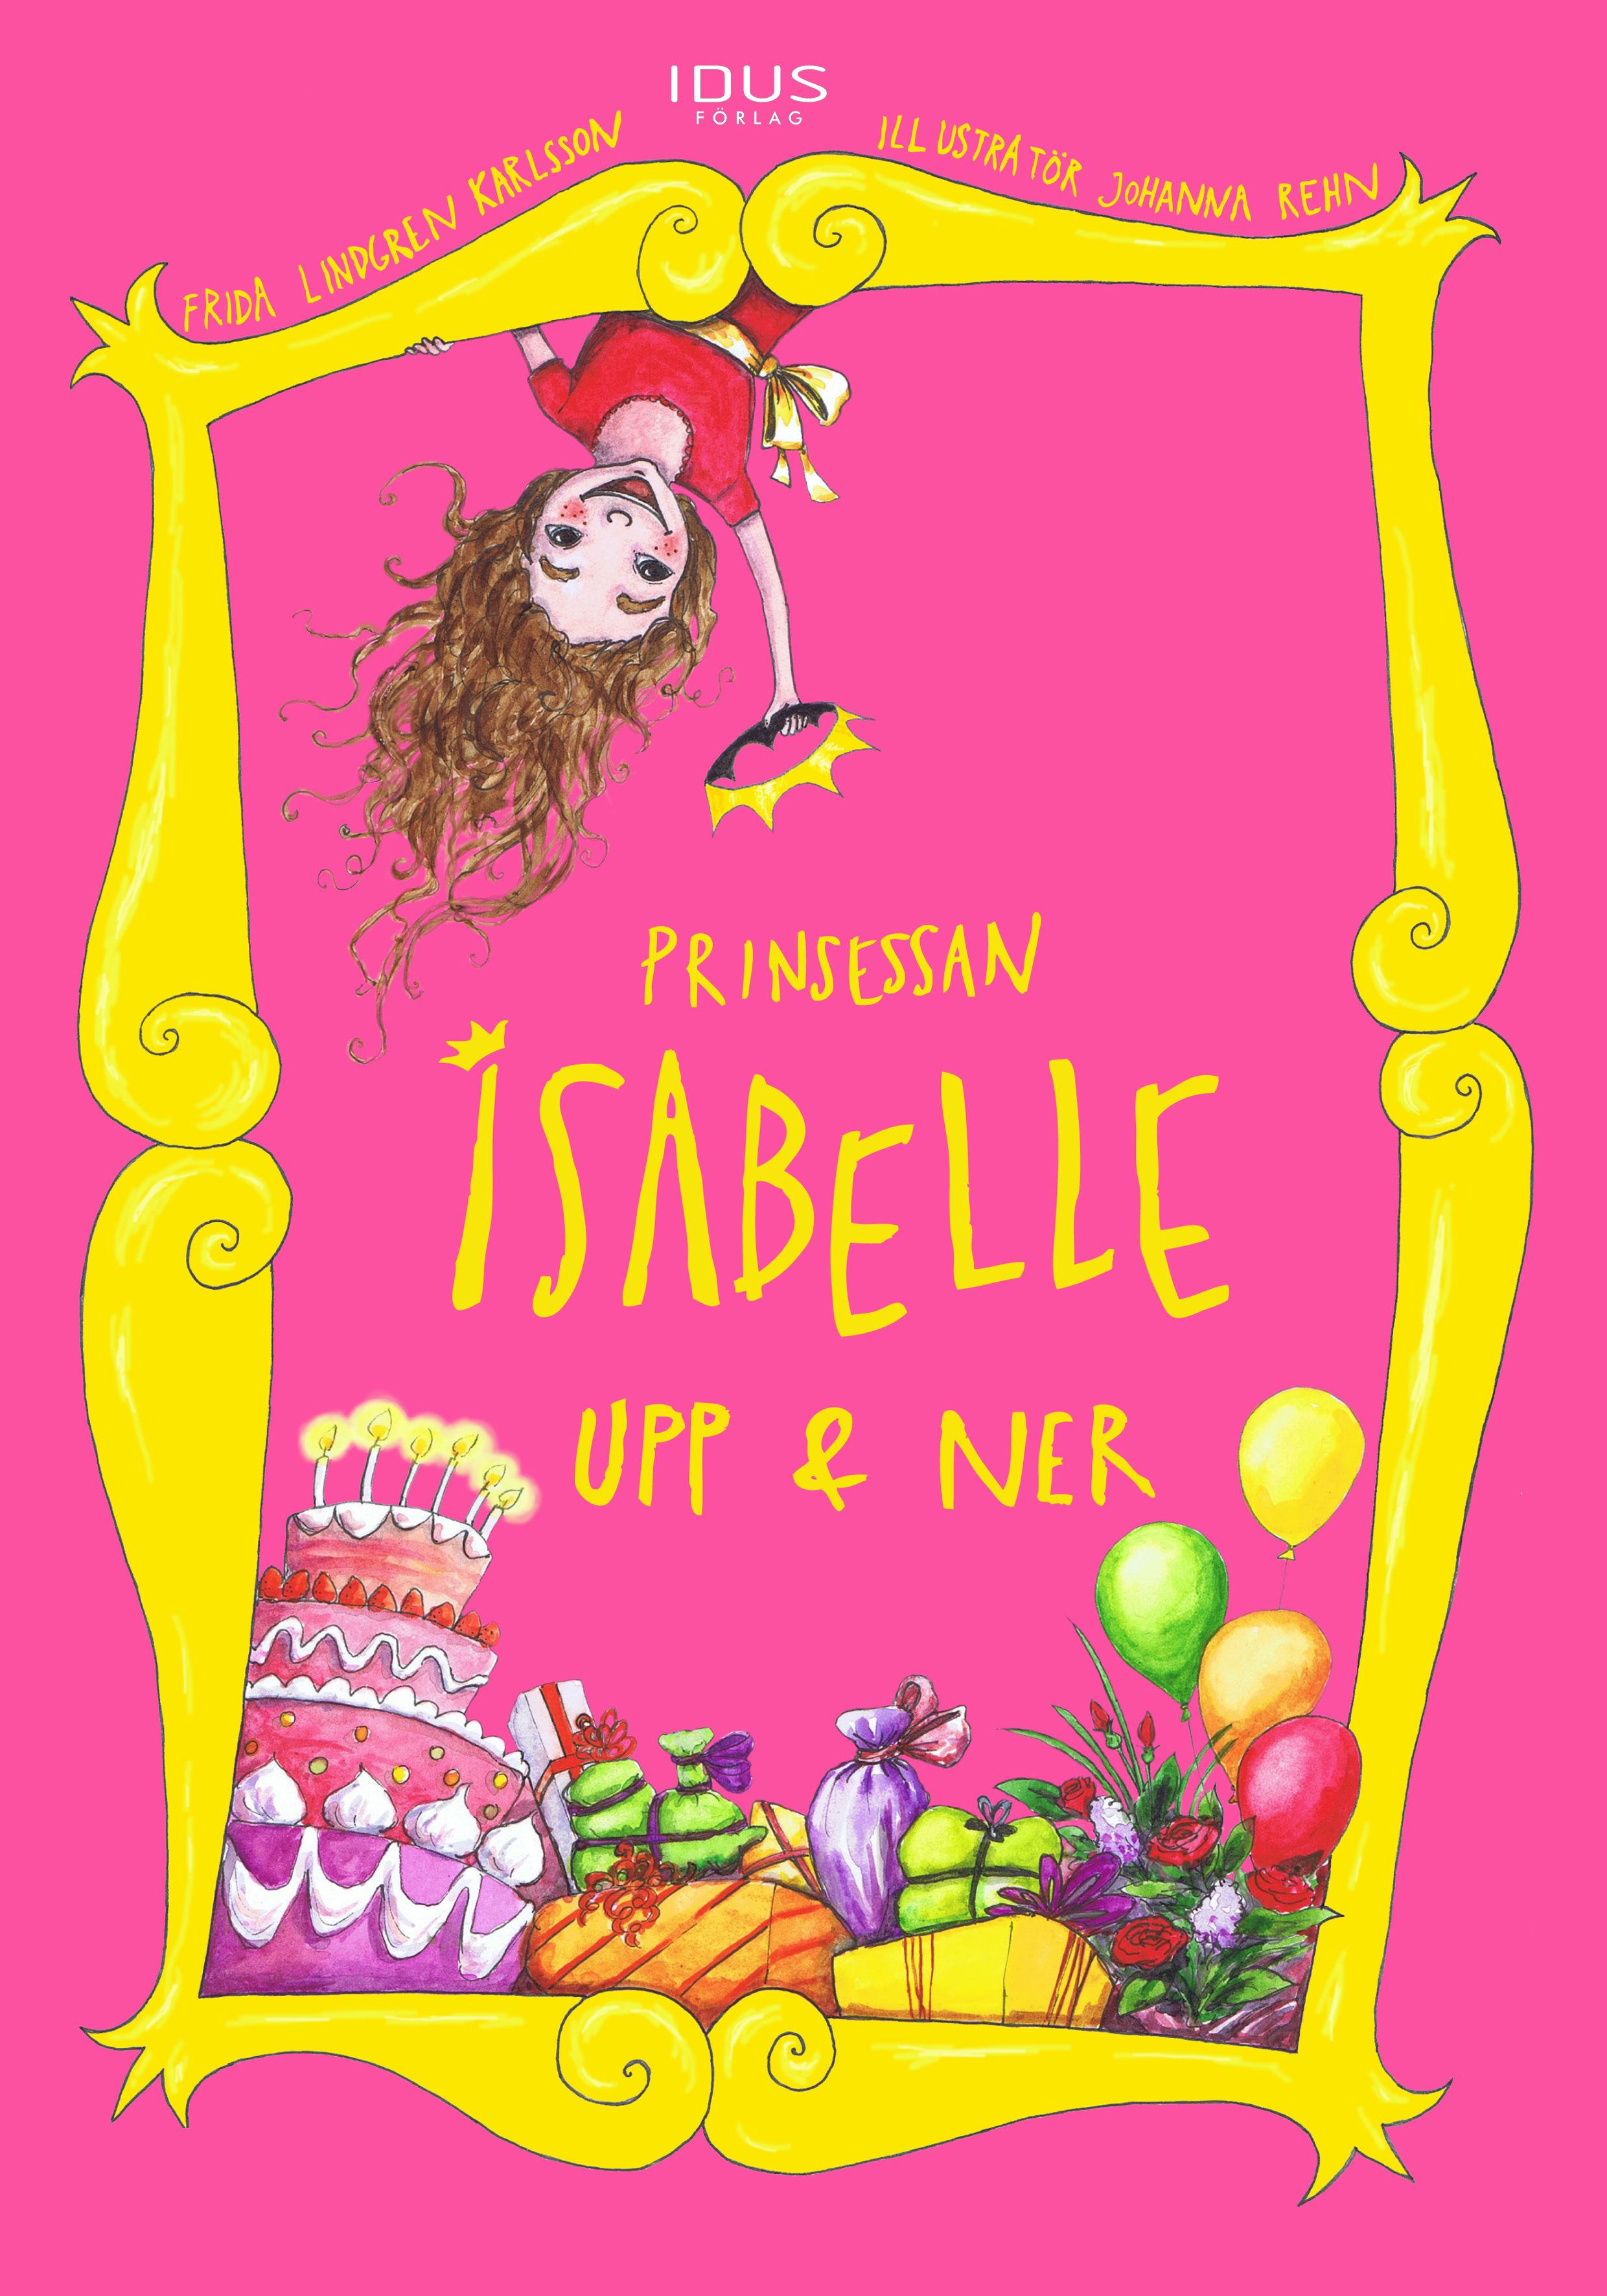 Prinsessan Isabelle Upp & Ner, eBook by Frida Lindgren Karlsson